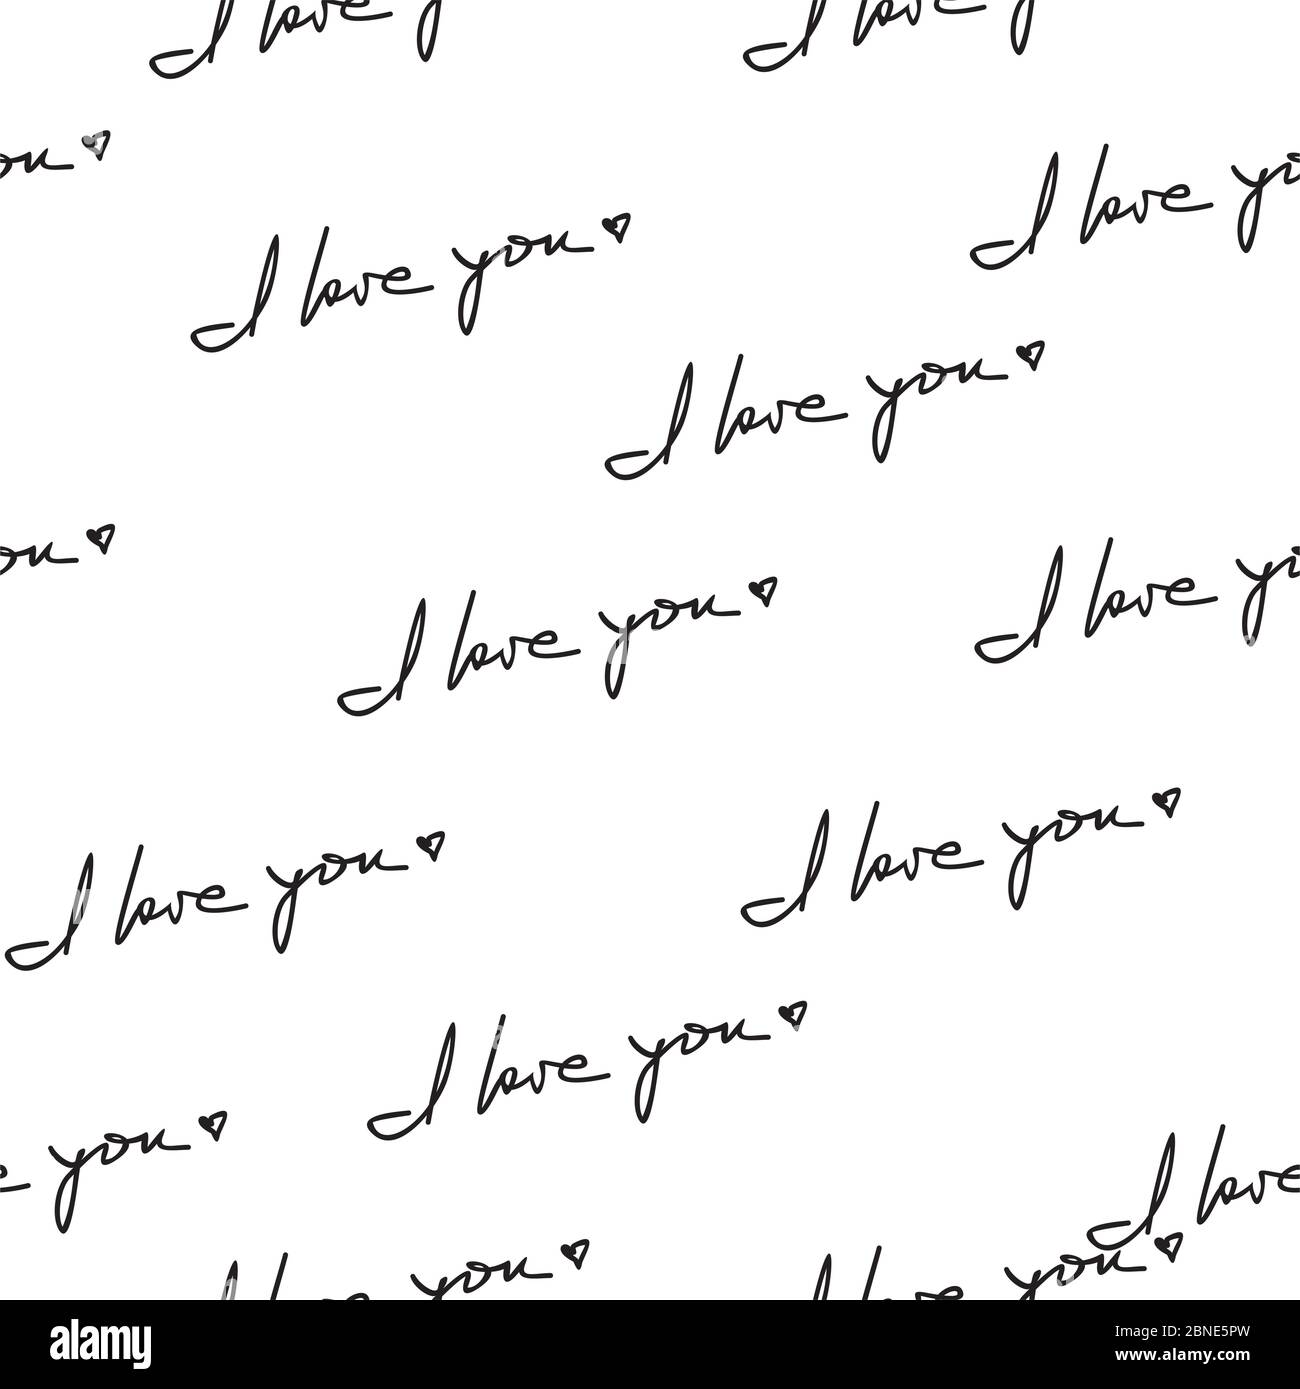 Ich liebe Sie Hand geschrieben Satz nahtlose Muster. Romantische Zitate zufällig auf weißem Hintergrund platziert. Verpackung Textur geeignet für Valentinstag gree Stock Vektor